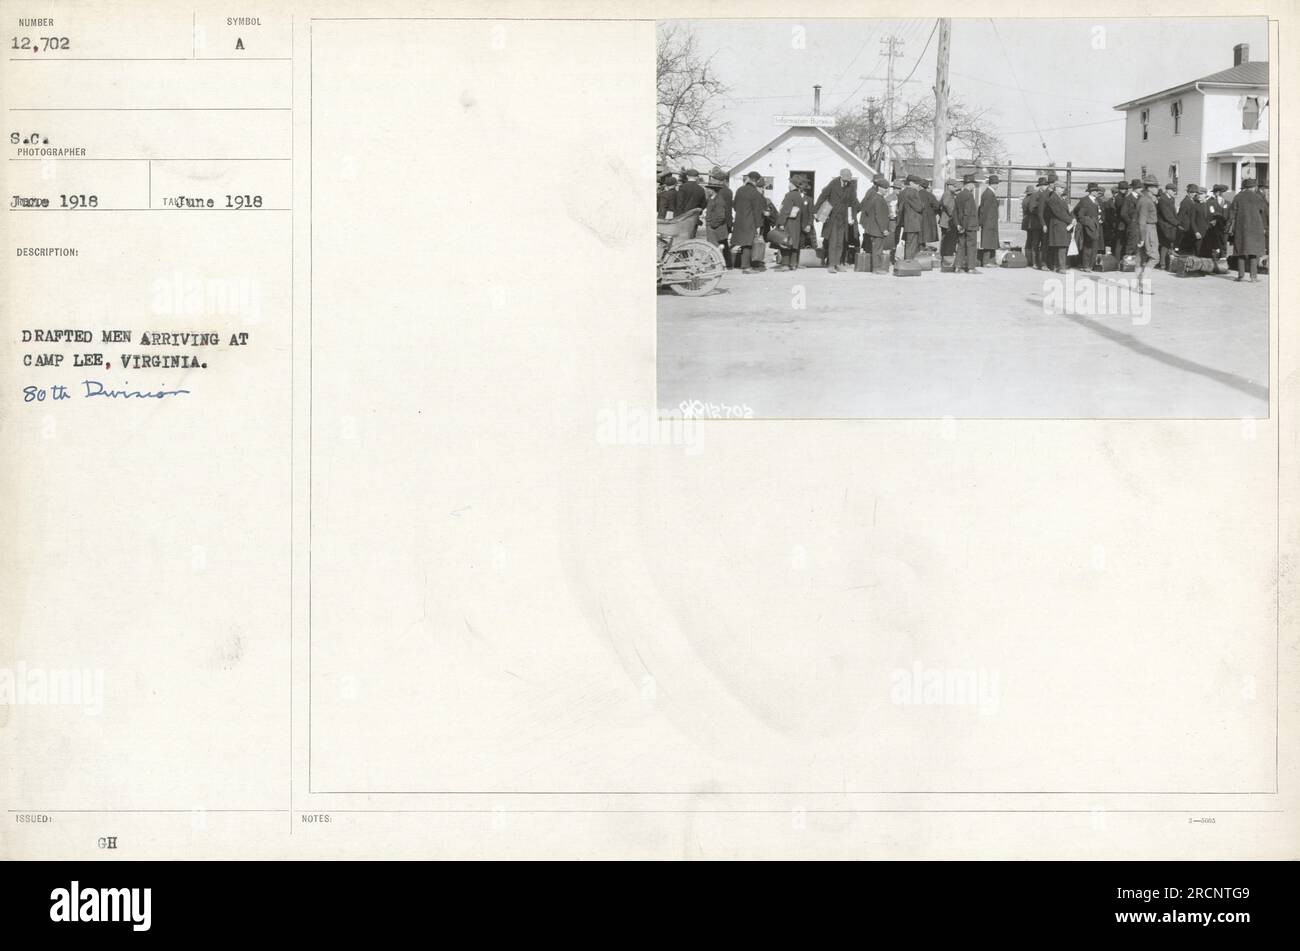 Die eingezogenen Männer kamen im Juni 1918 in Camp Lee, Virginia an. Das ist ein Foto von der 80. Division der Armee im 1. Weltkrieg Es ist Nummer 12.702 in der Serie und wurde von einem S.C.-Fotografen aufgenommen. Es bietet einen Einblick in die militärischen Aktivitäten der damaligen Zeit. Stockfoto